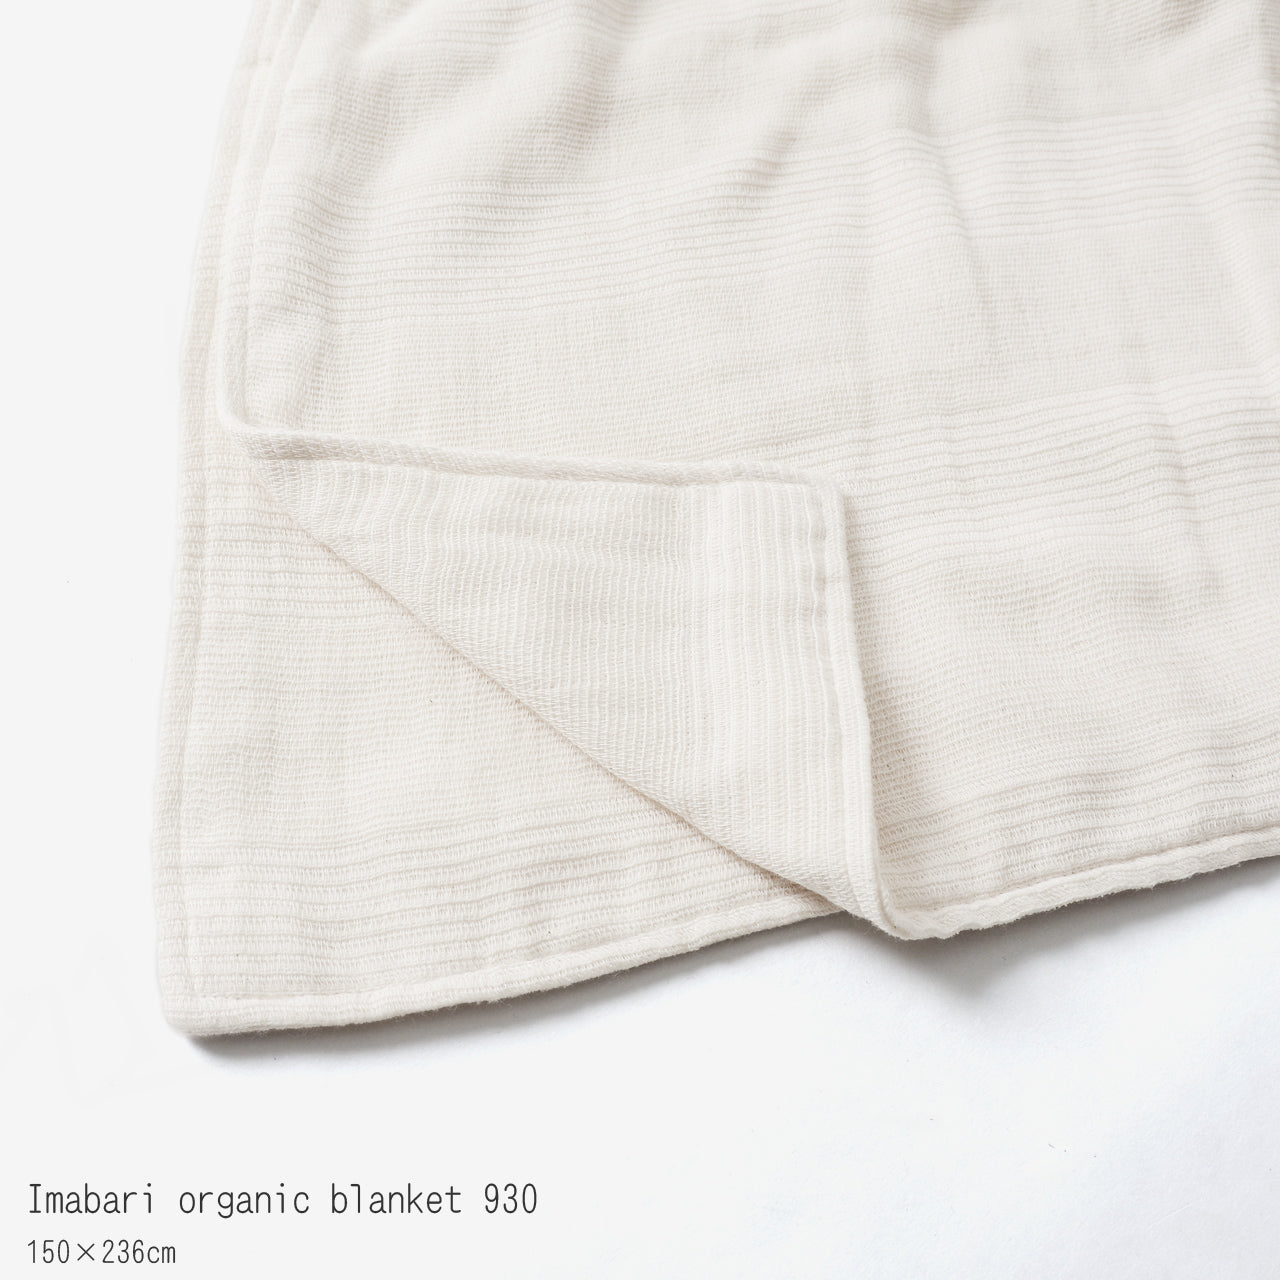 みやざきタオル 今治 オーガニック コットン ブランケット レギュラーサイズ Imabari organic blanket 930 【送料無料】